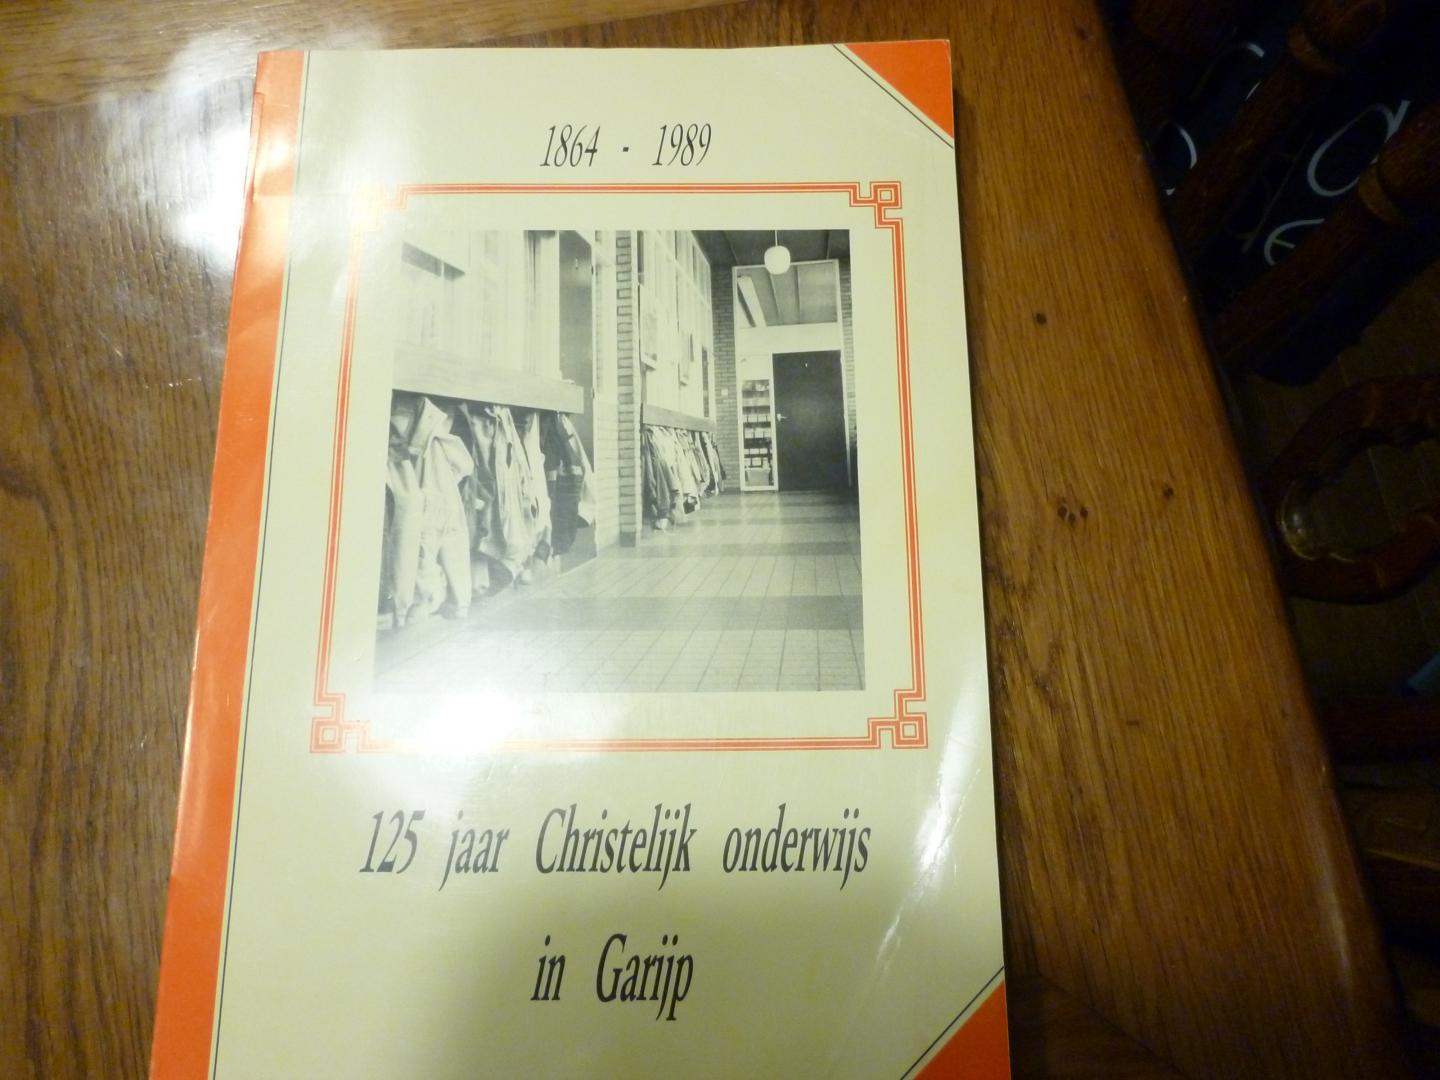  - 125 jaar Christelijk onderwijs in Garijp